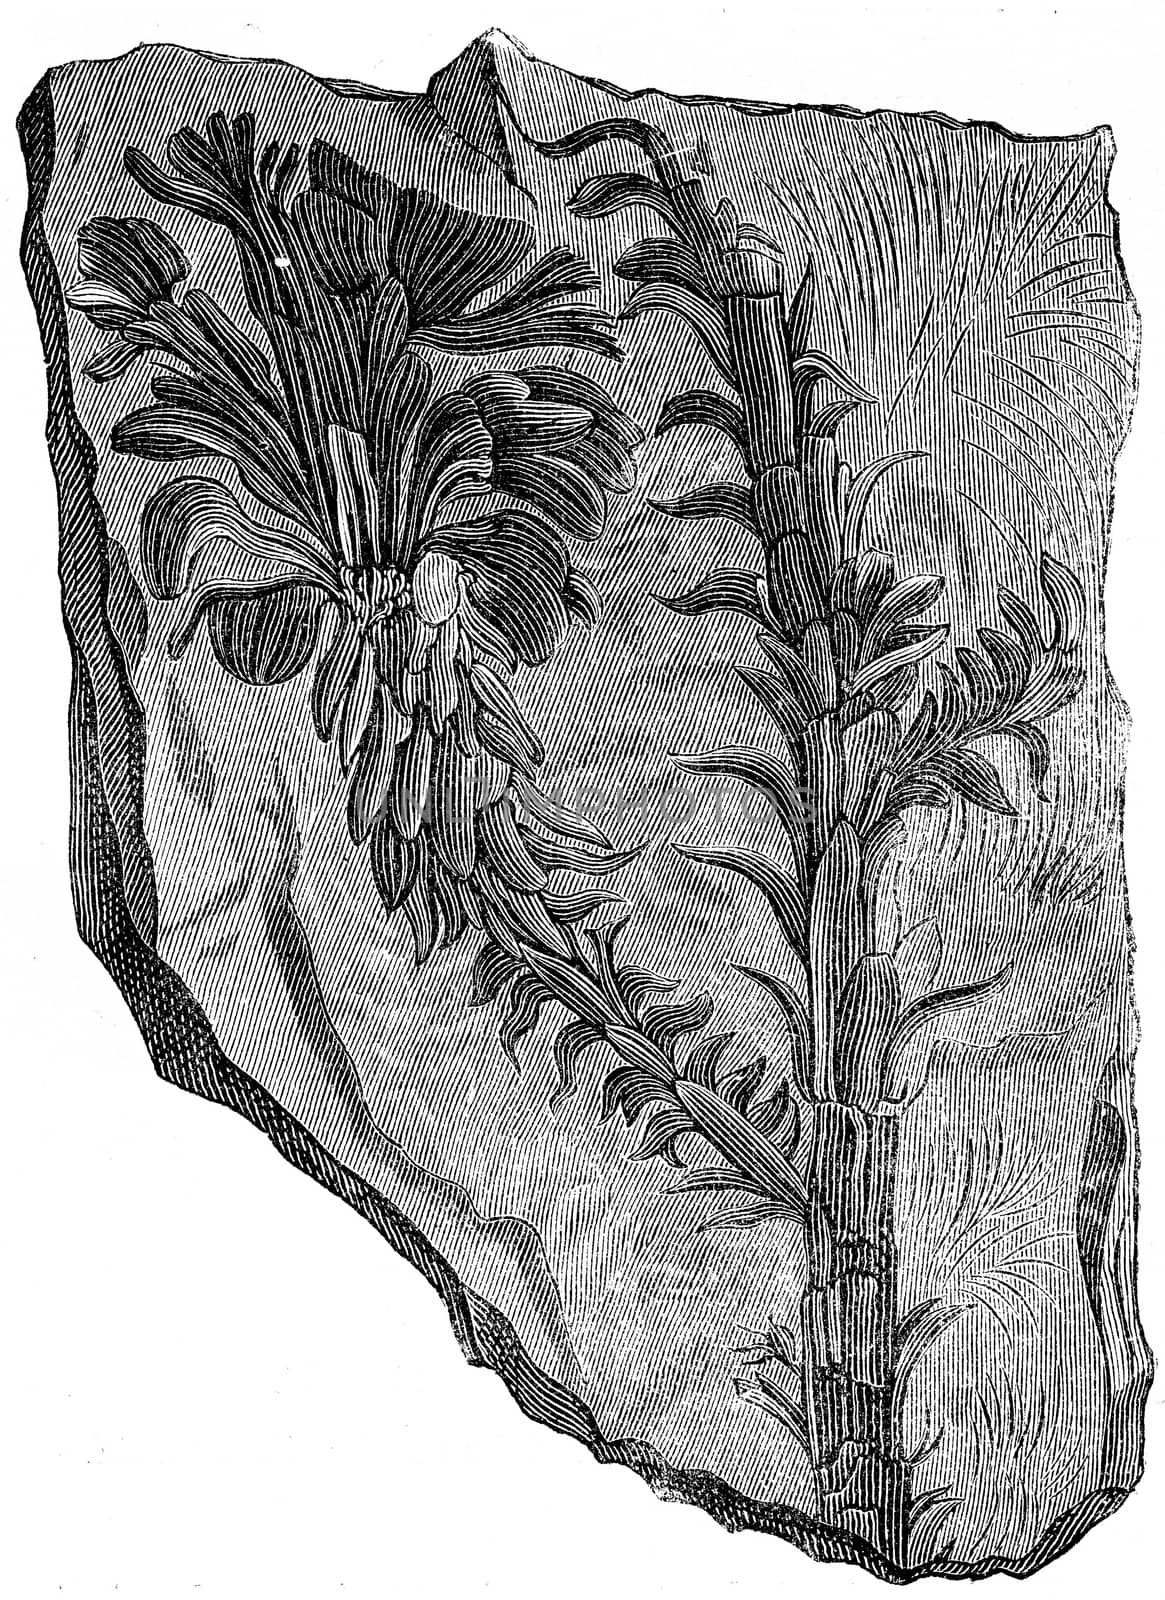 Voltzia heterophylla, vintage engraving. by Morphart